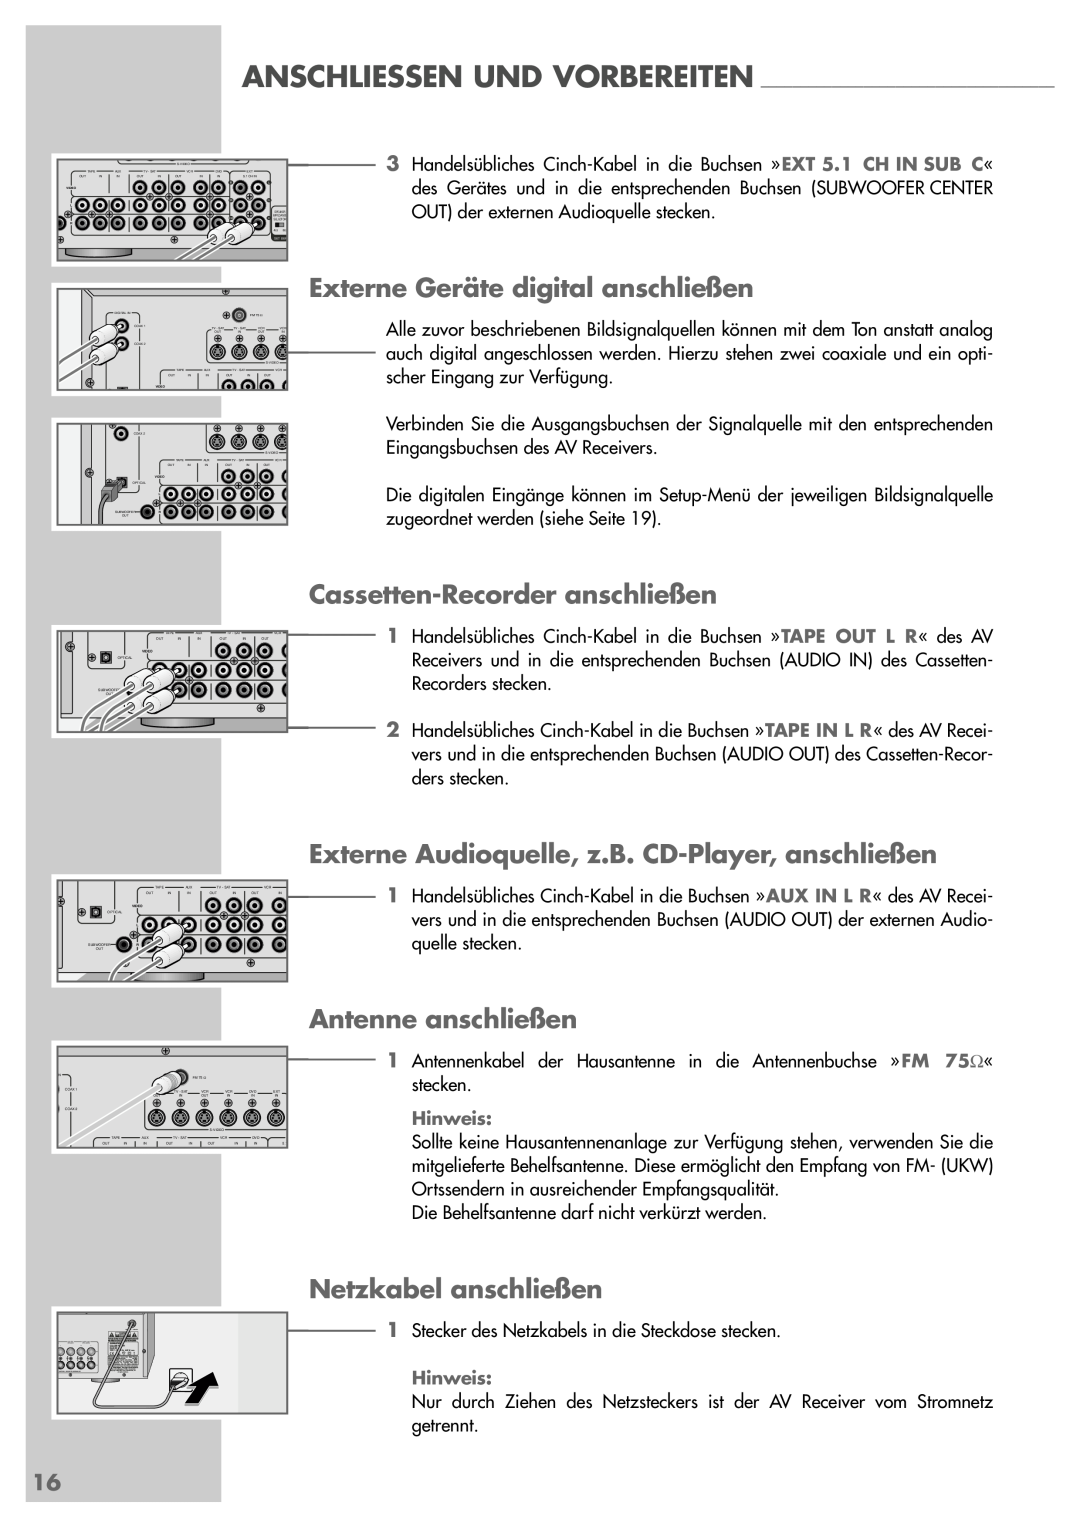 Grundig AVR 5200 DD manual Externe Geräte digital anschließen, Externe Audioquelle, z.B. CD-Player,anschließen 